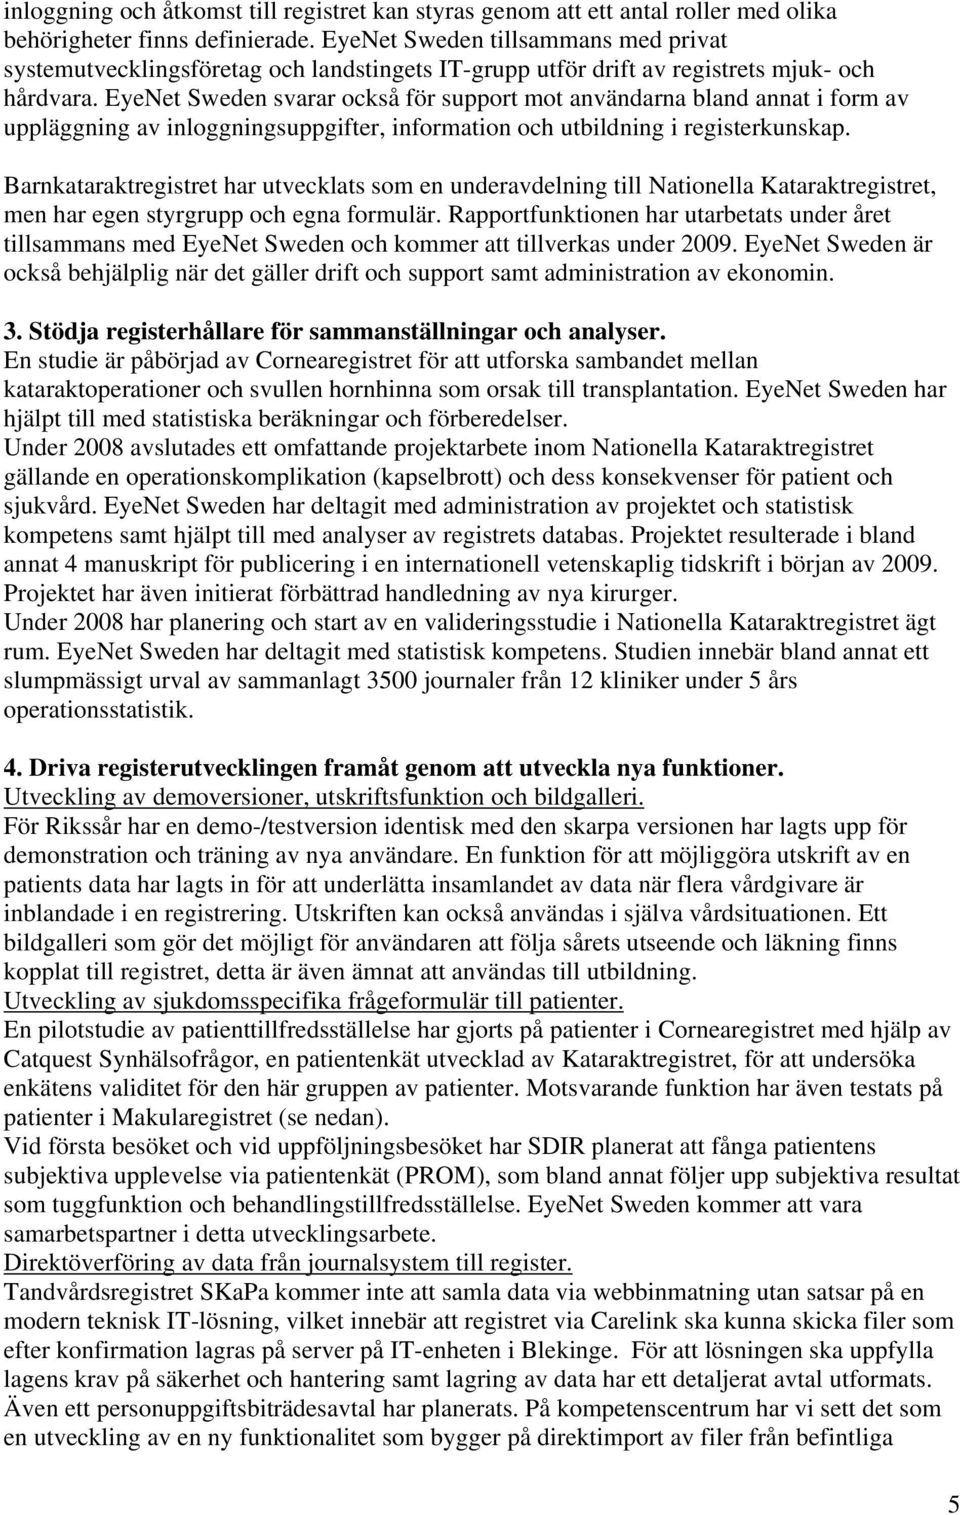 EyeNet Sweden svarar också för support mot användarna bland annat i form av uppläggning av inloggningsuppgifter, information och utbildning i registerkunskap.